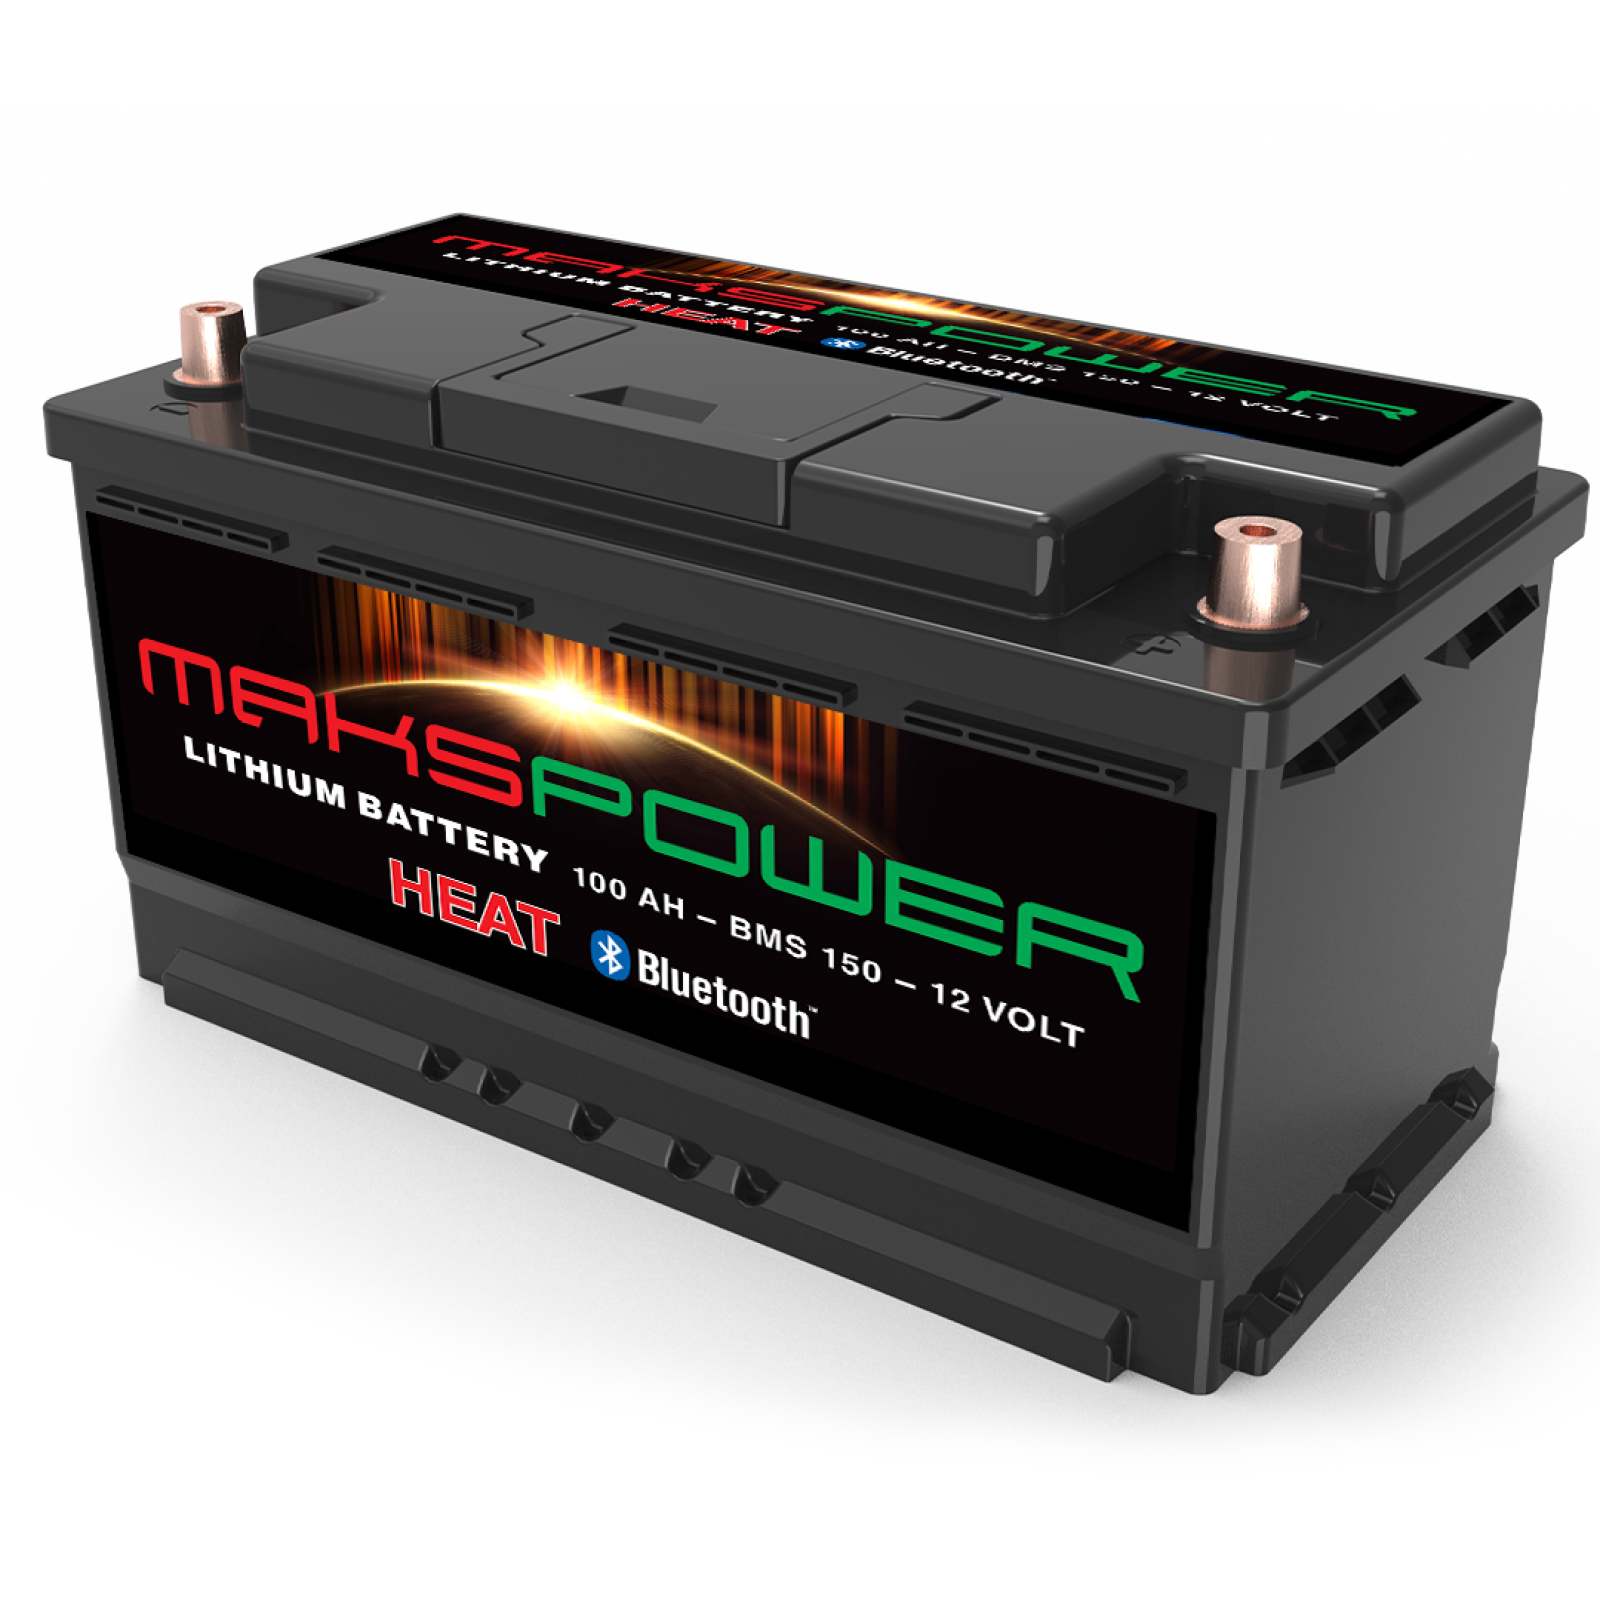 Makspower Litium Bobilbatteri - Bodelsbatteri - 12V 100Ah